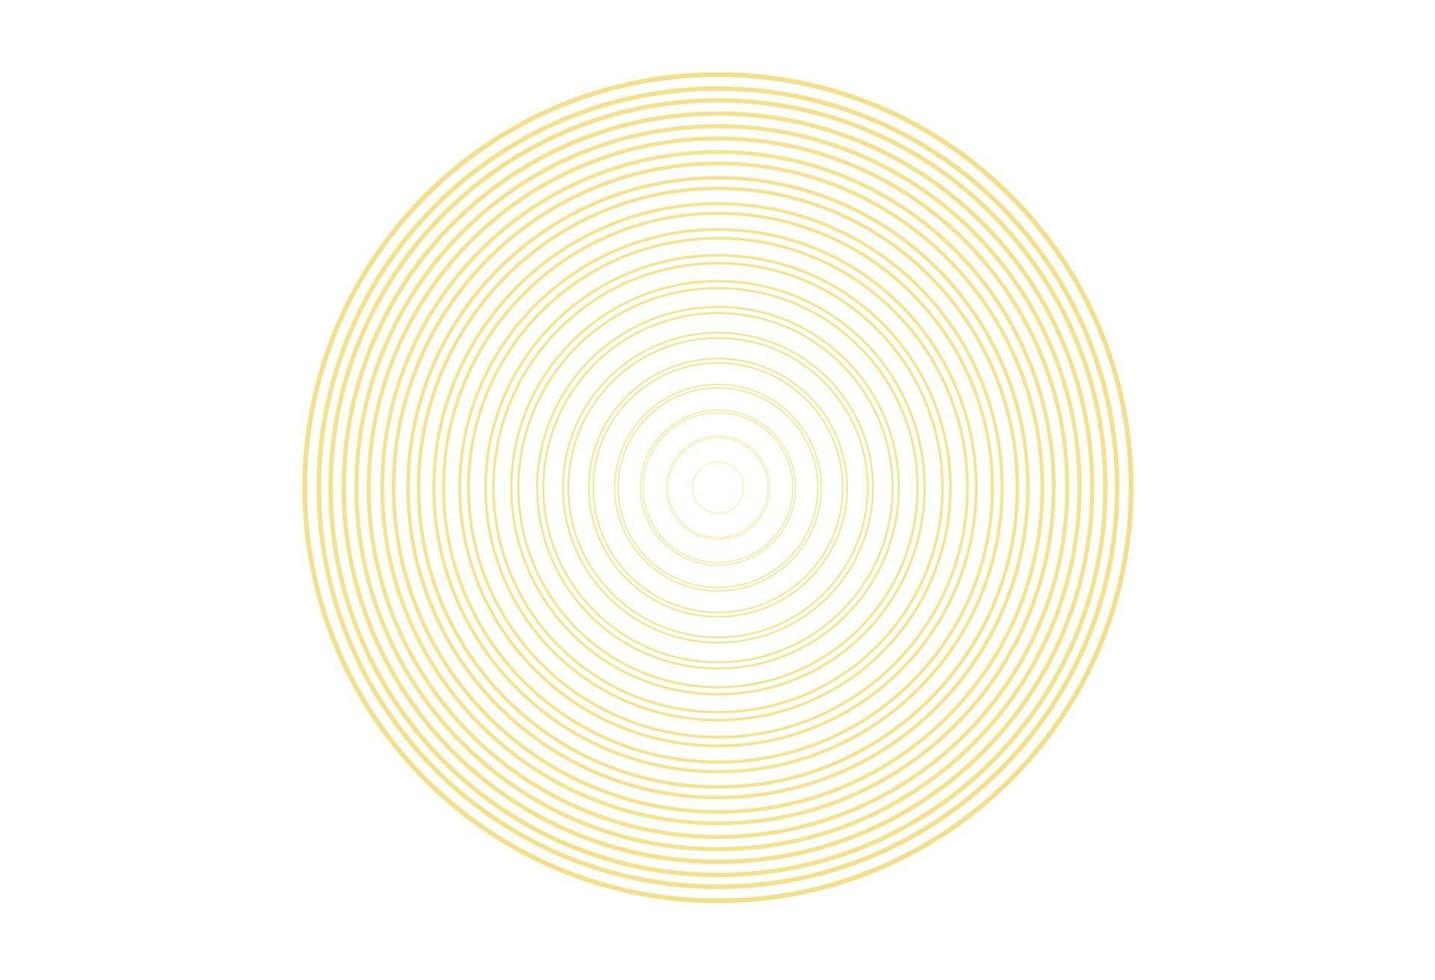 elemento cerchio concentrico. anello color oro lussuoso. illustrazione vettoriale astratta per onda sonora, grafica dorata, decorazione moderna per siti Web, poster, banner, modello eps10 vettoriale